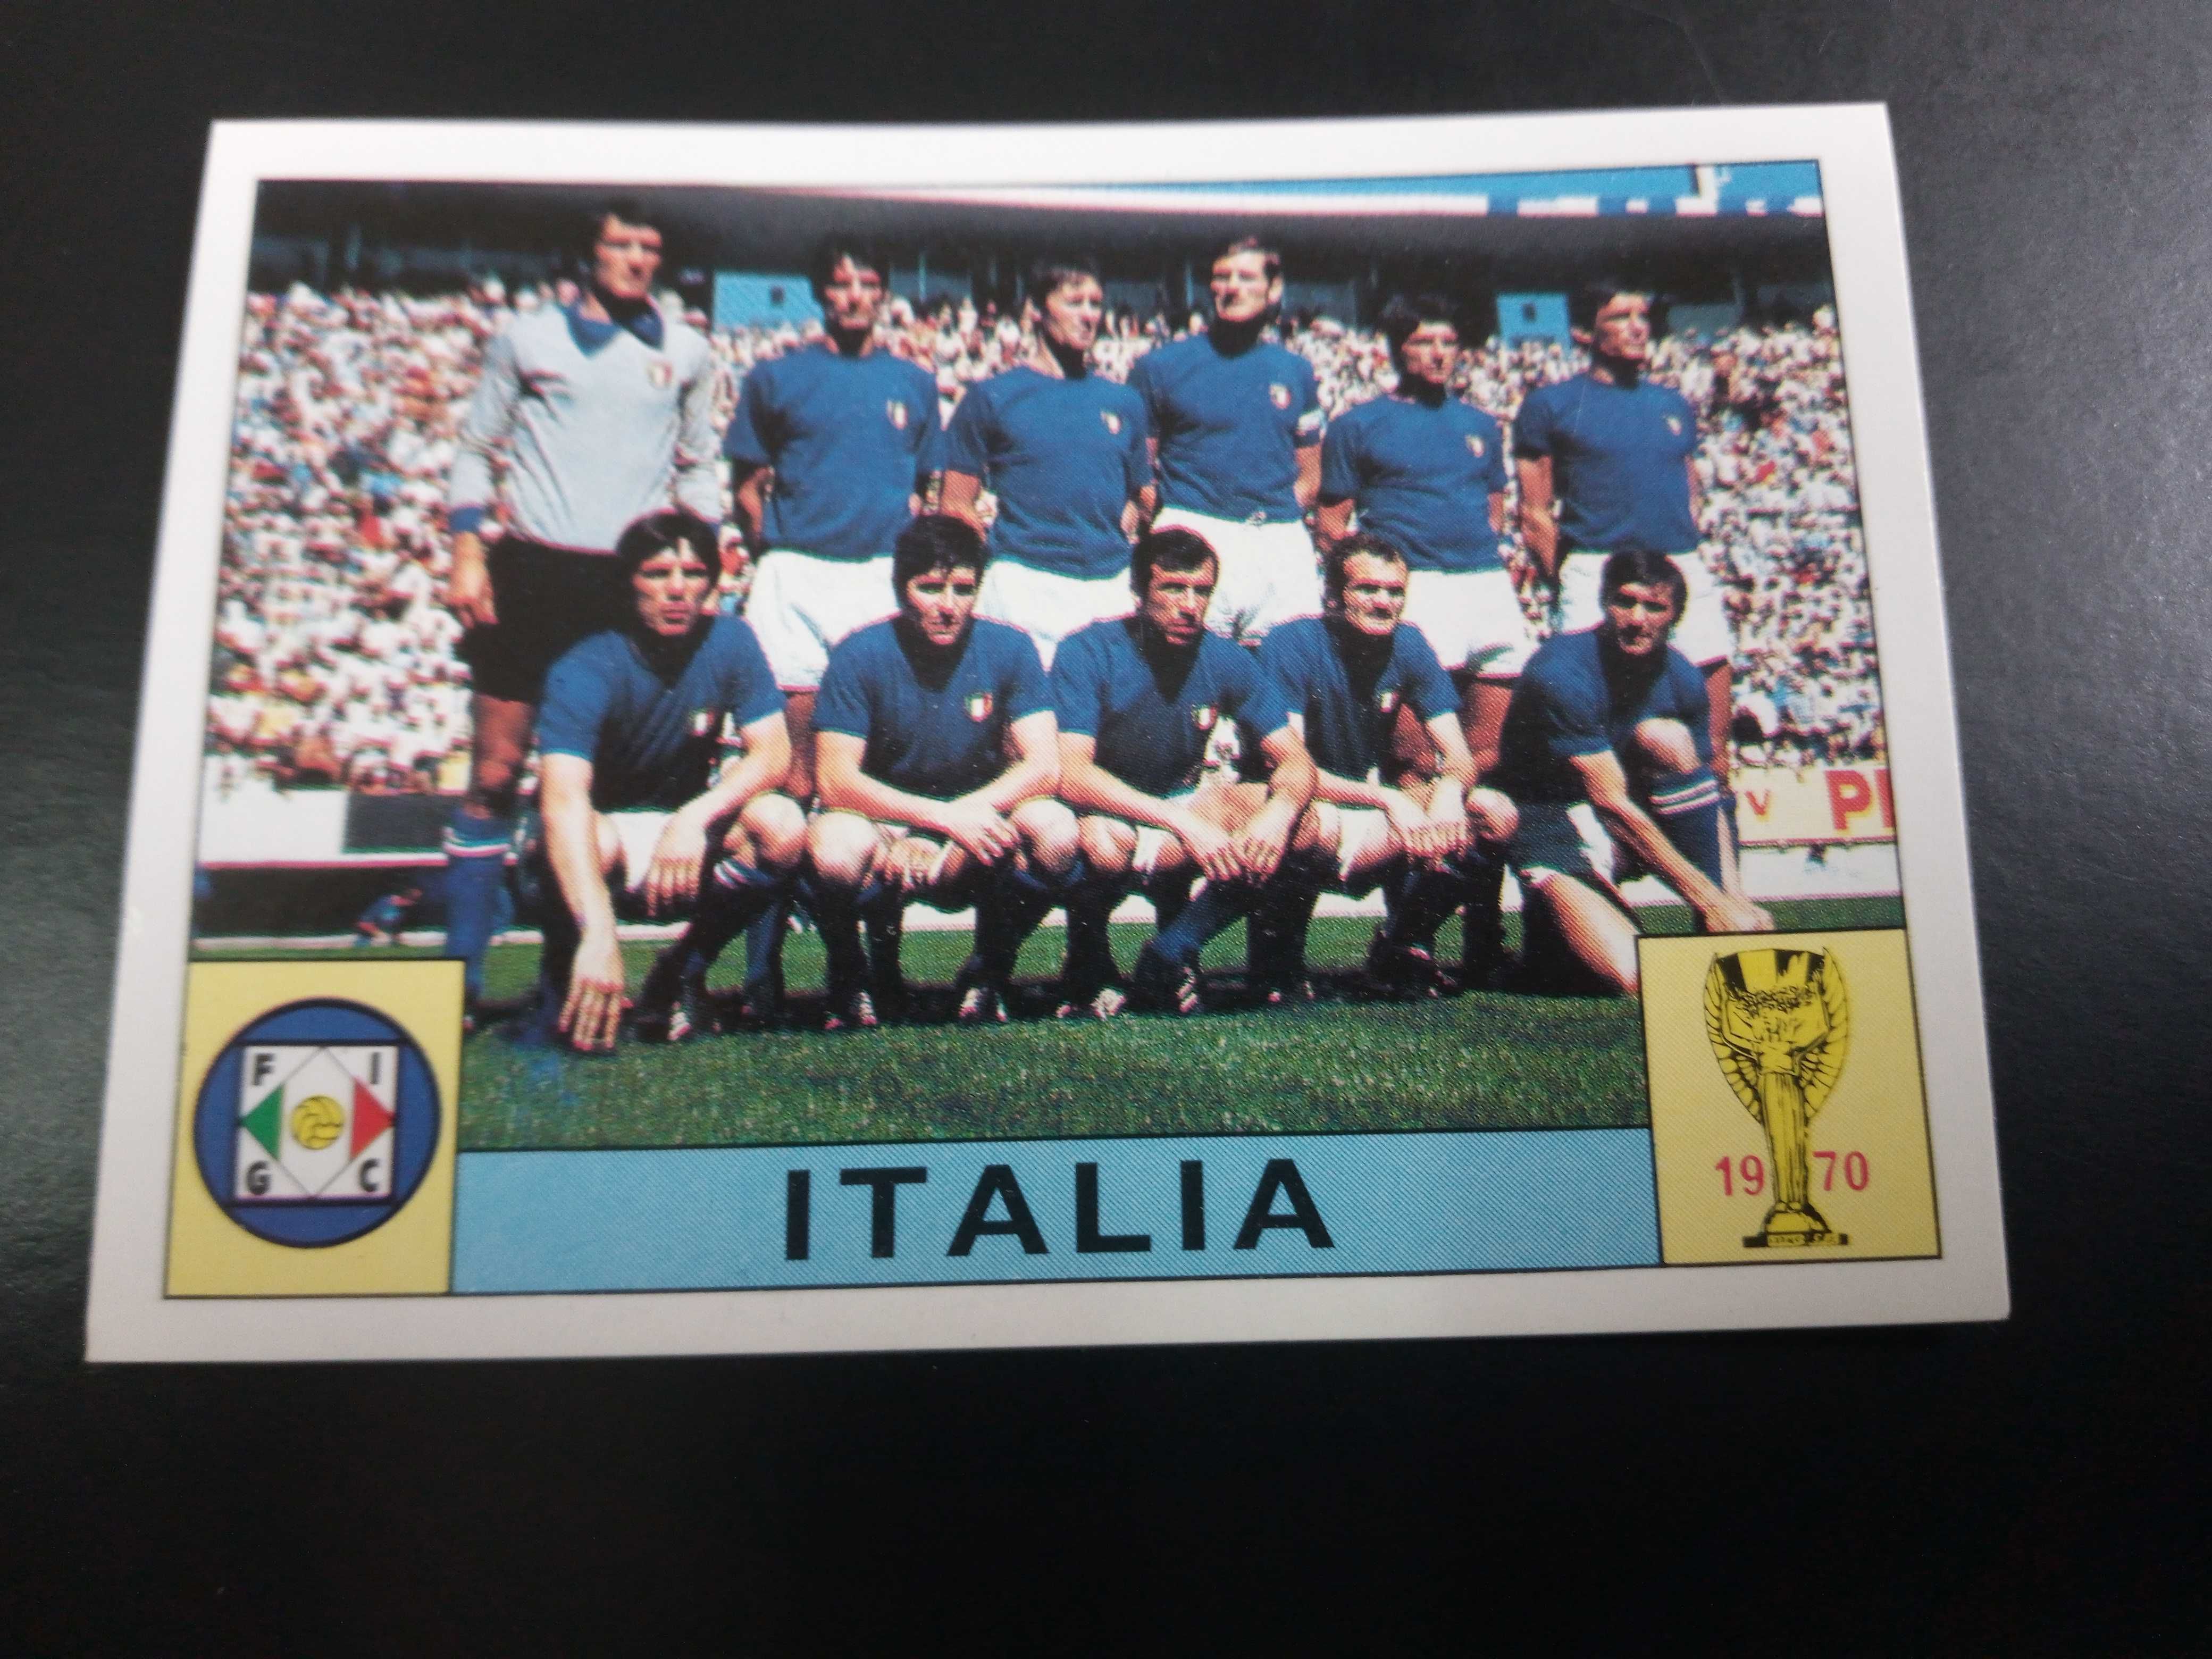 Cromo Panini World Cup Story da Seleção de Itália no Mundial de 70